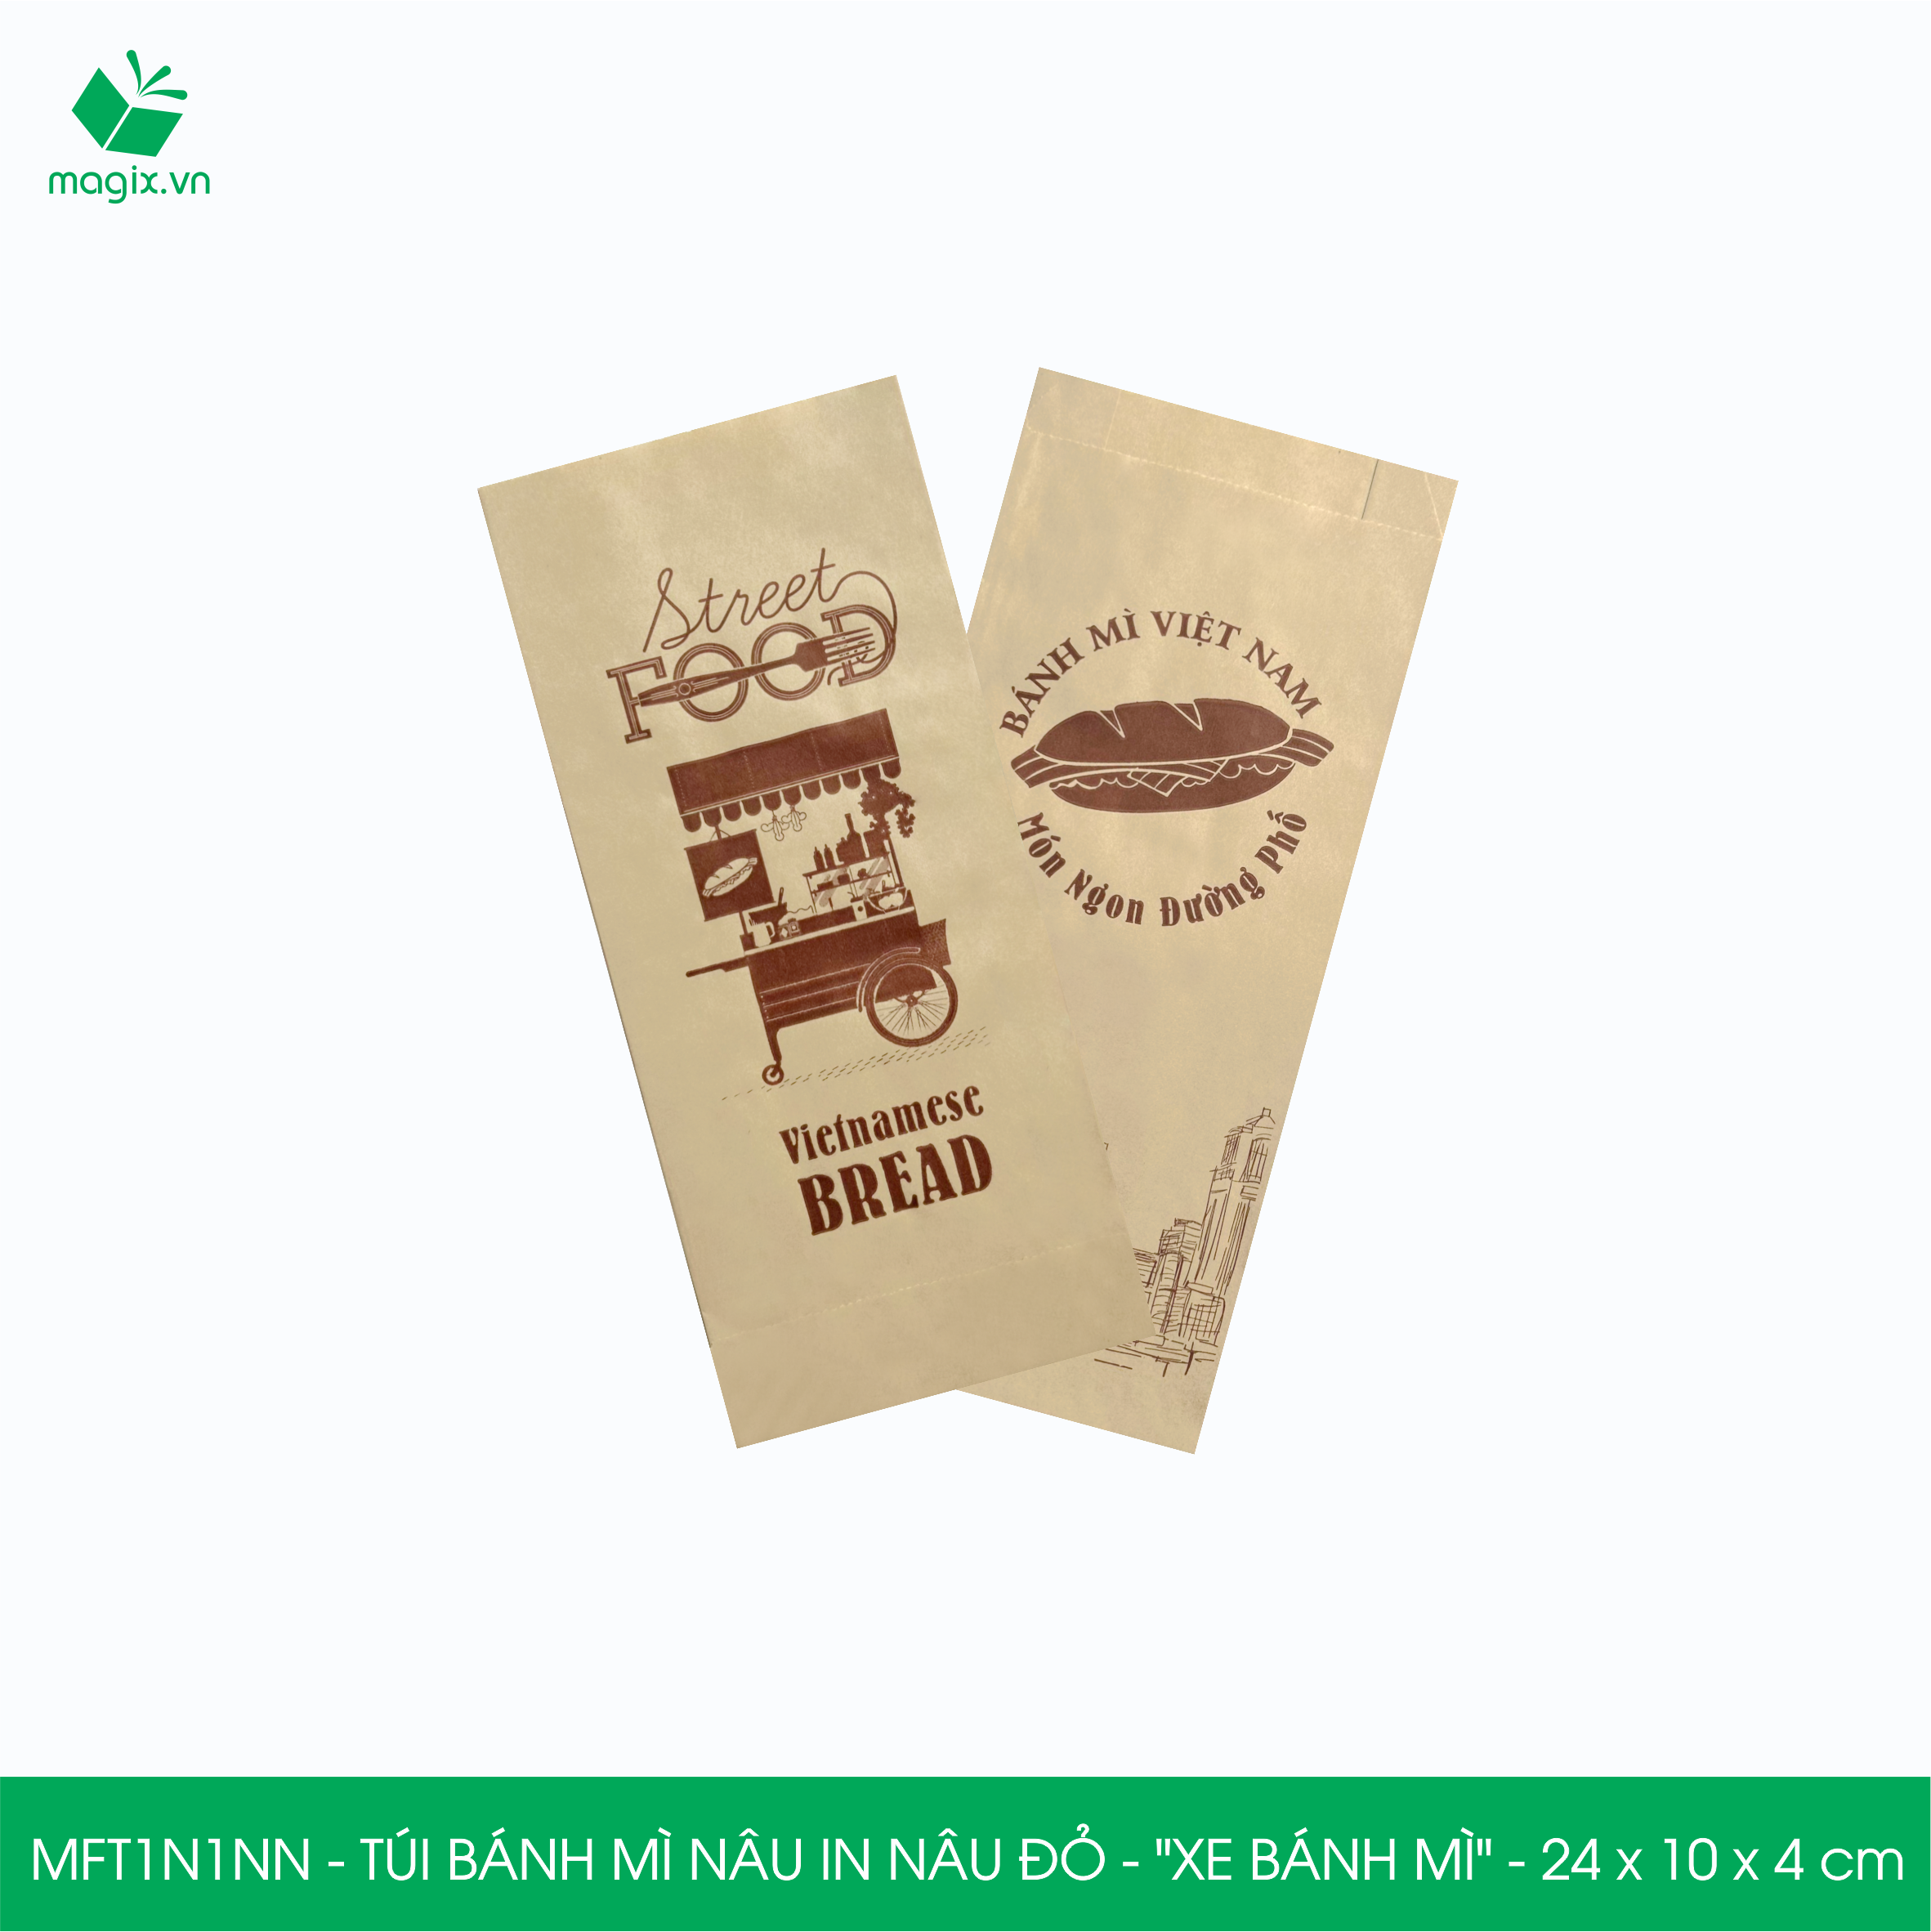 MFT1N1NN - 24x10x4 cm - 200 Túi bánh mì Nâu, in sẵn họa tiết XE BÁNH MÌ - Bao bánh mì Túi giấy thực phẩm an toàn